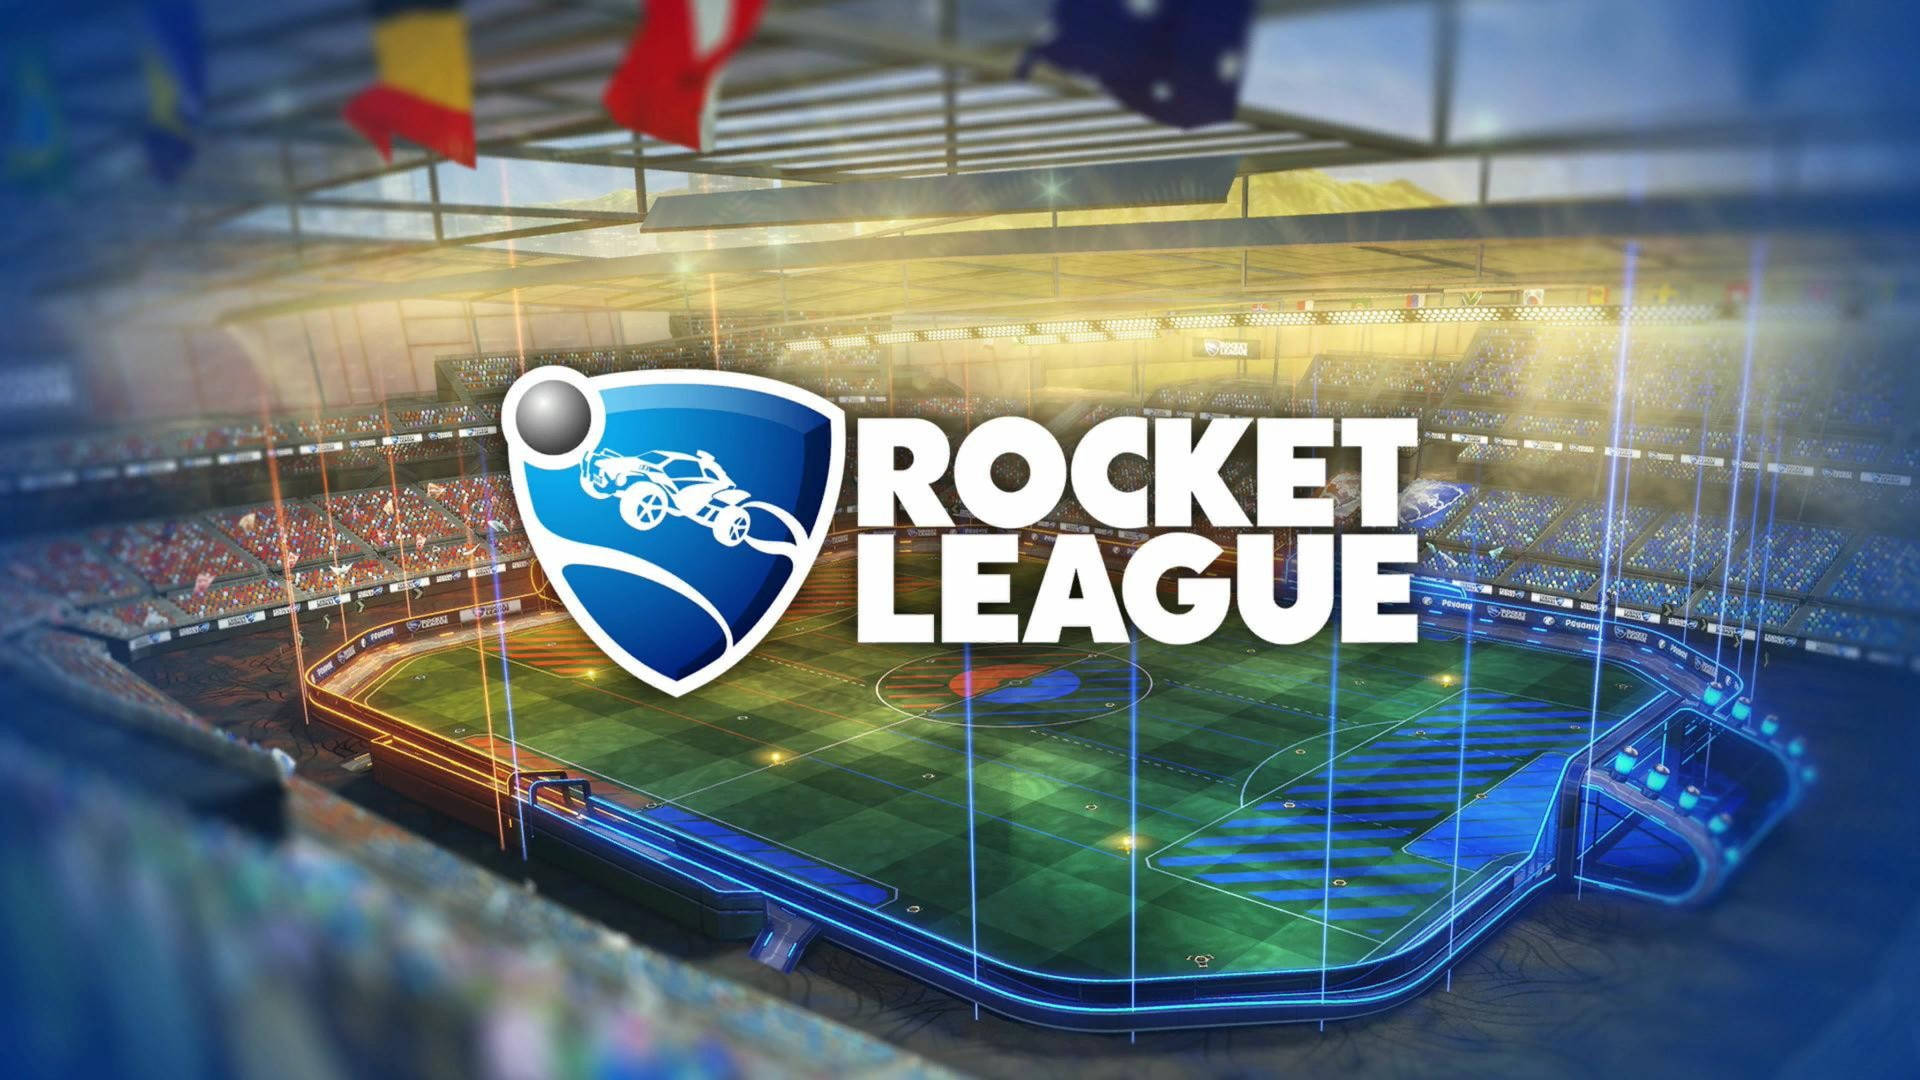 Rocket League Hd Logo On Field Background